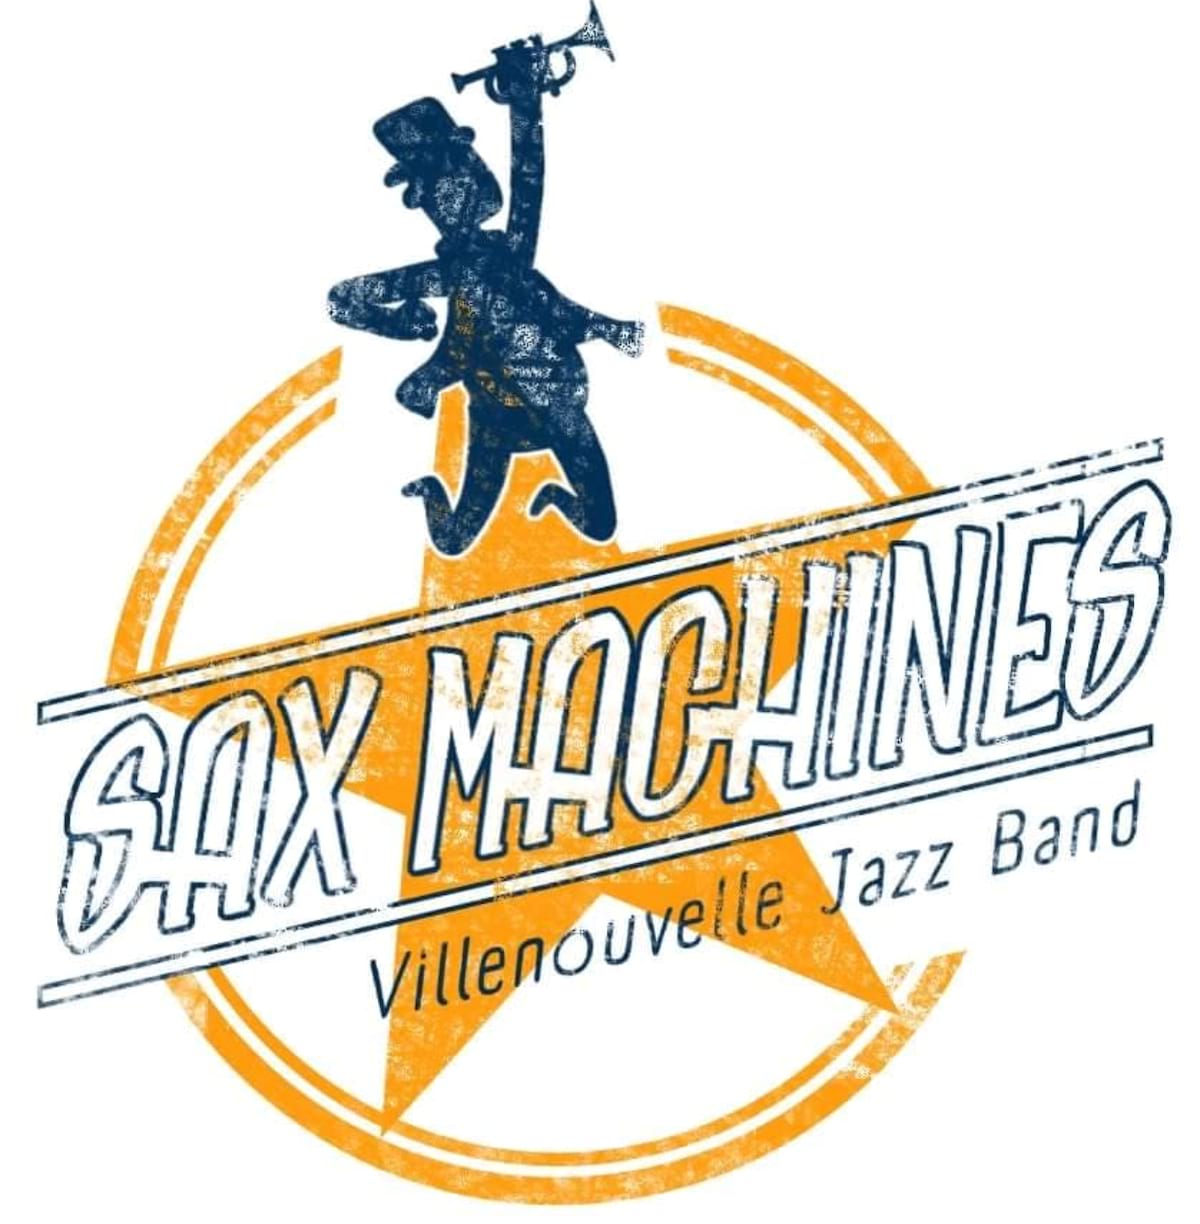 Sax Machines Villenouvelle Jazz Band